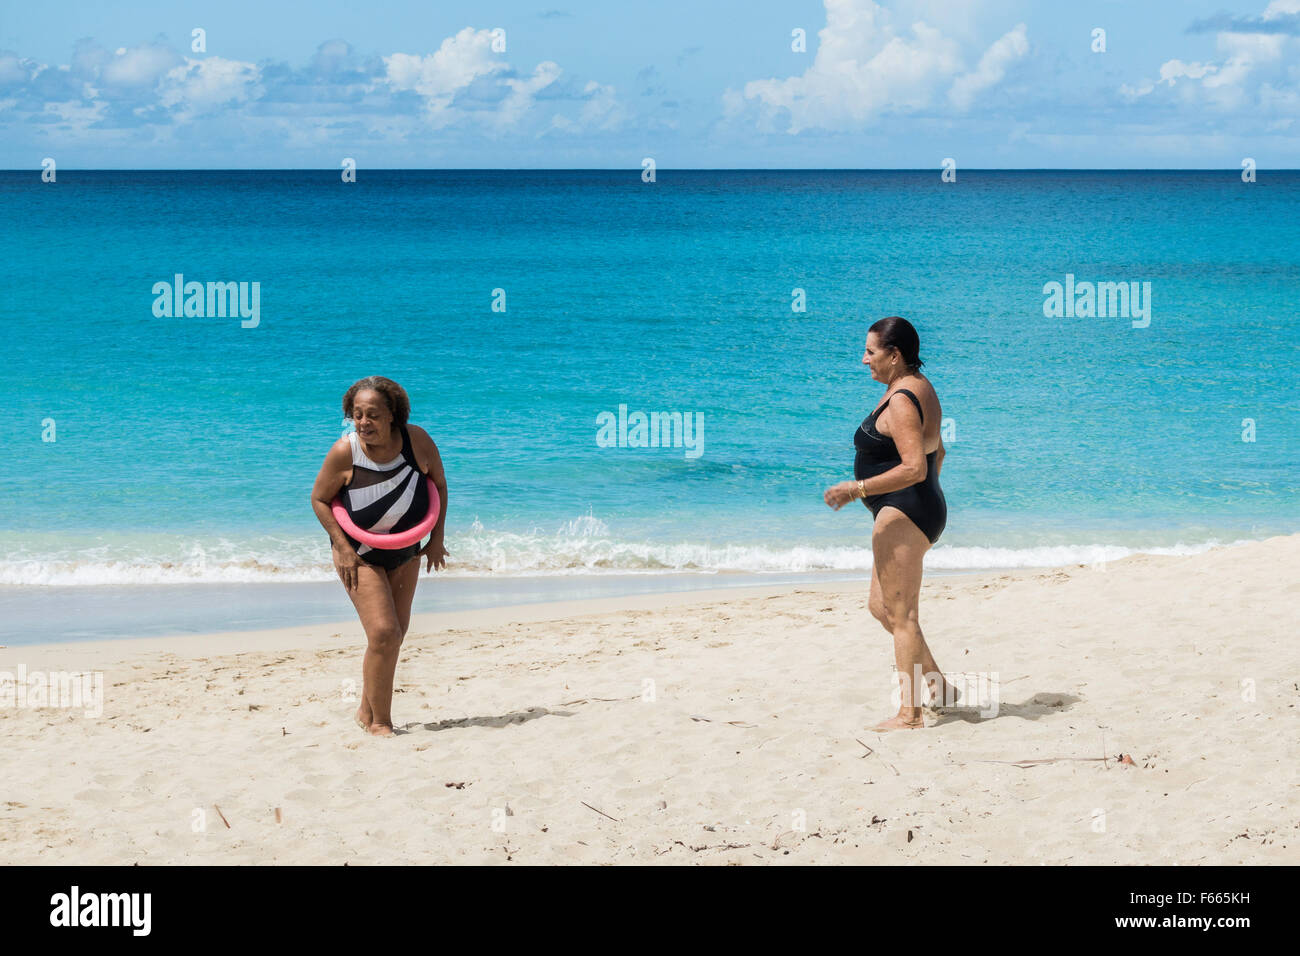 Une femme afro-américaine bénéficie de la plage avec un ami, une femme de race blanche. Sainte Croix, Îles Vierges des États-Unis. US Virgin Islands, USVI, U.S.V.I. Banque D'Images